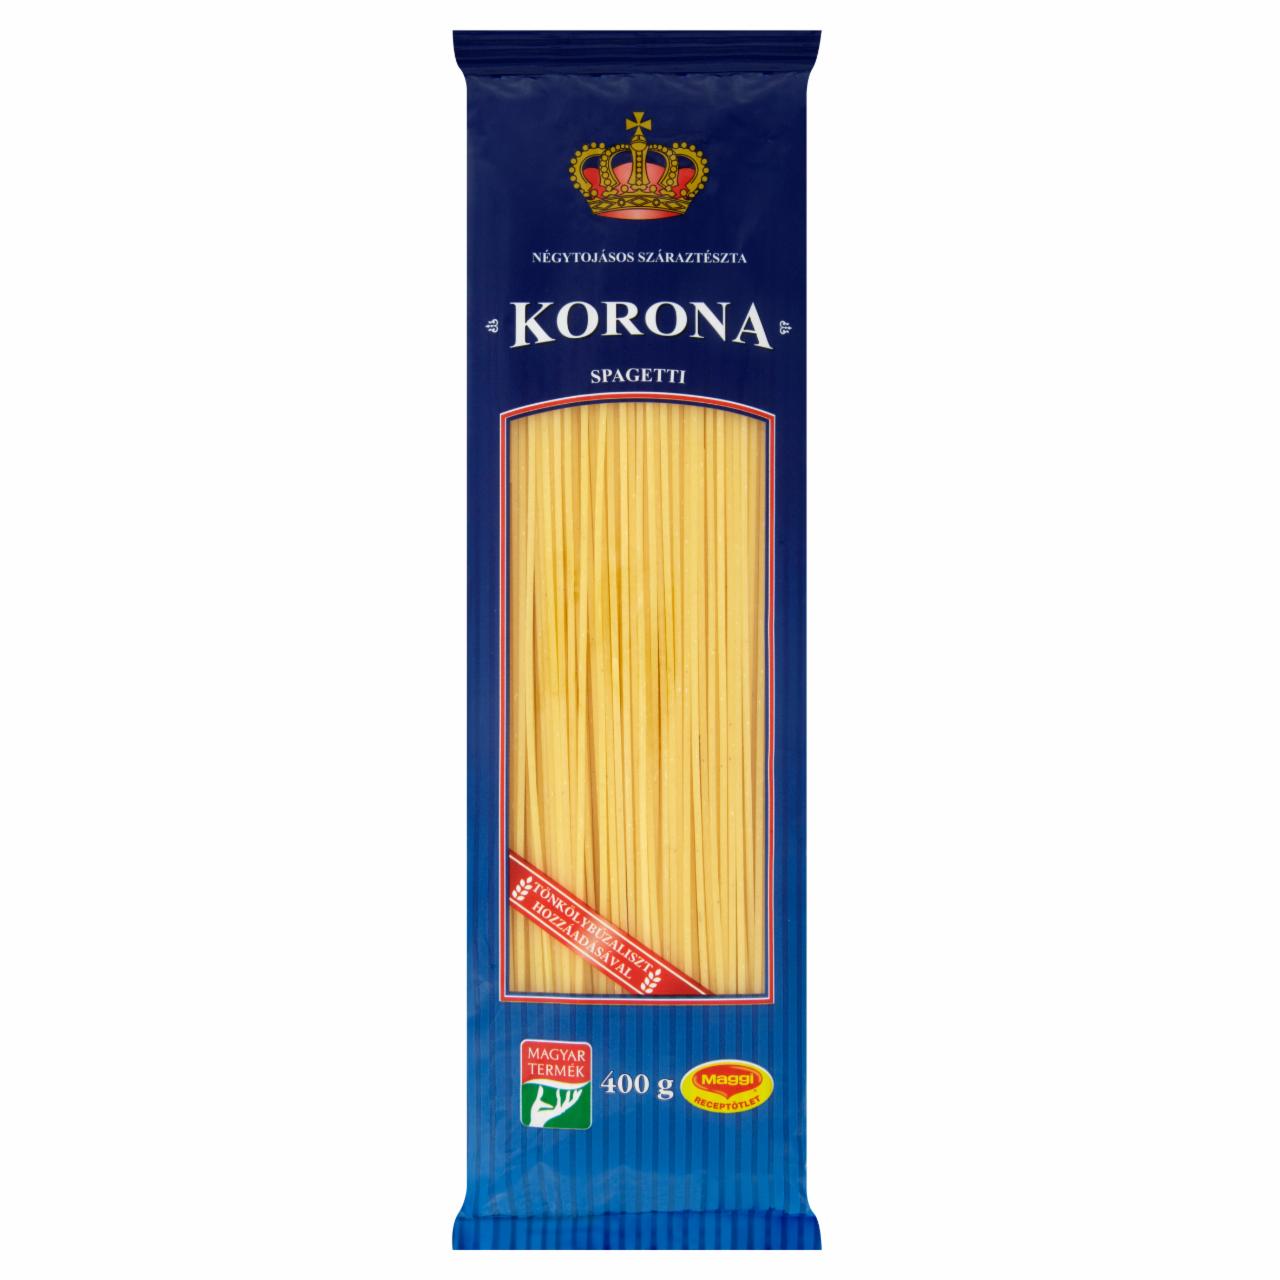 Képek - Korona spagetti 4 tojásos száraztészta 400 g